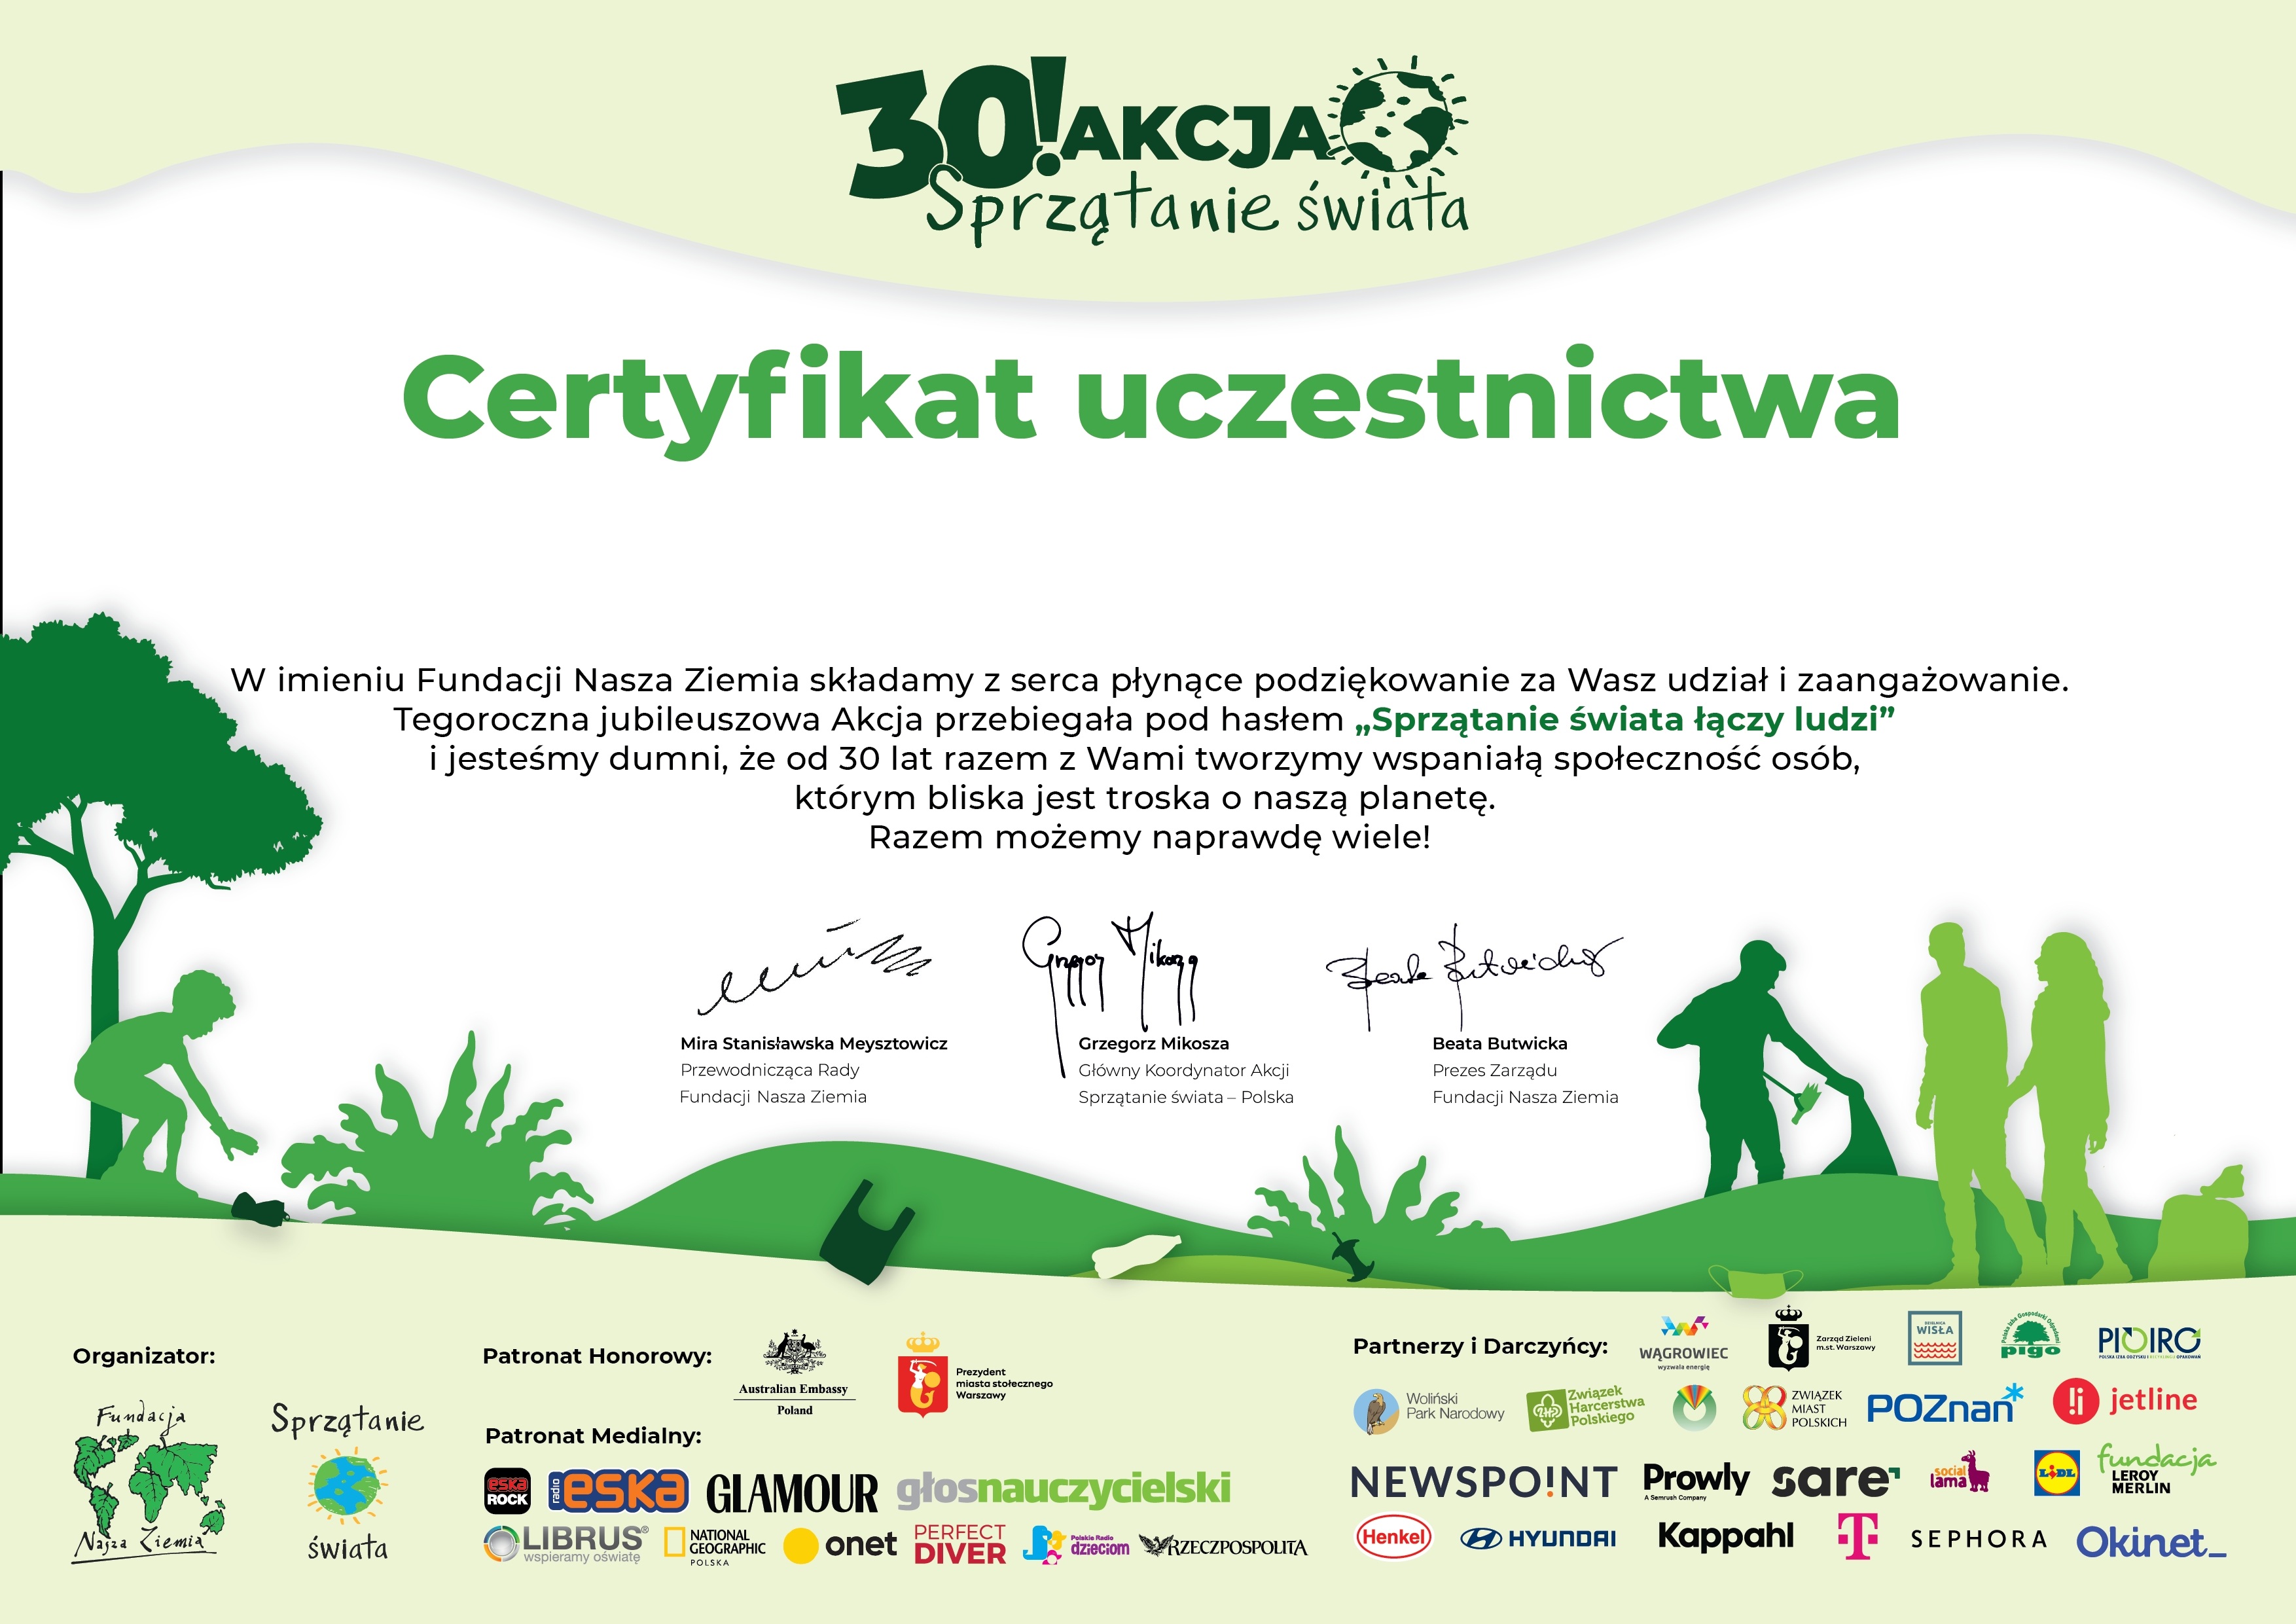 Obraz - Certyfikat uczestnictwa - 30 Akcja sprzątenie świata